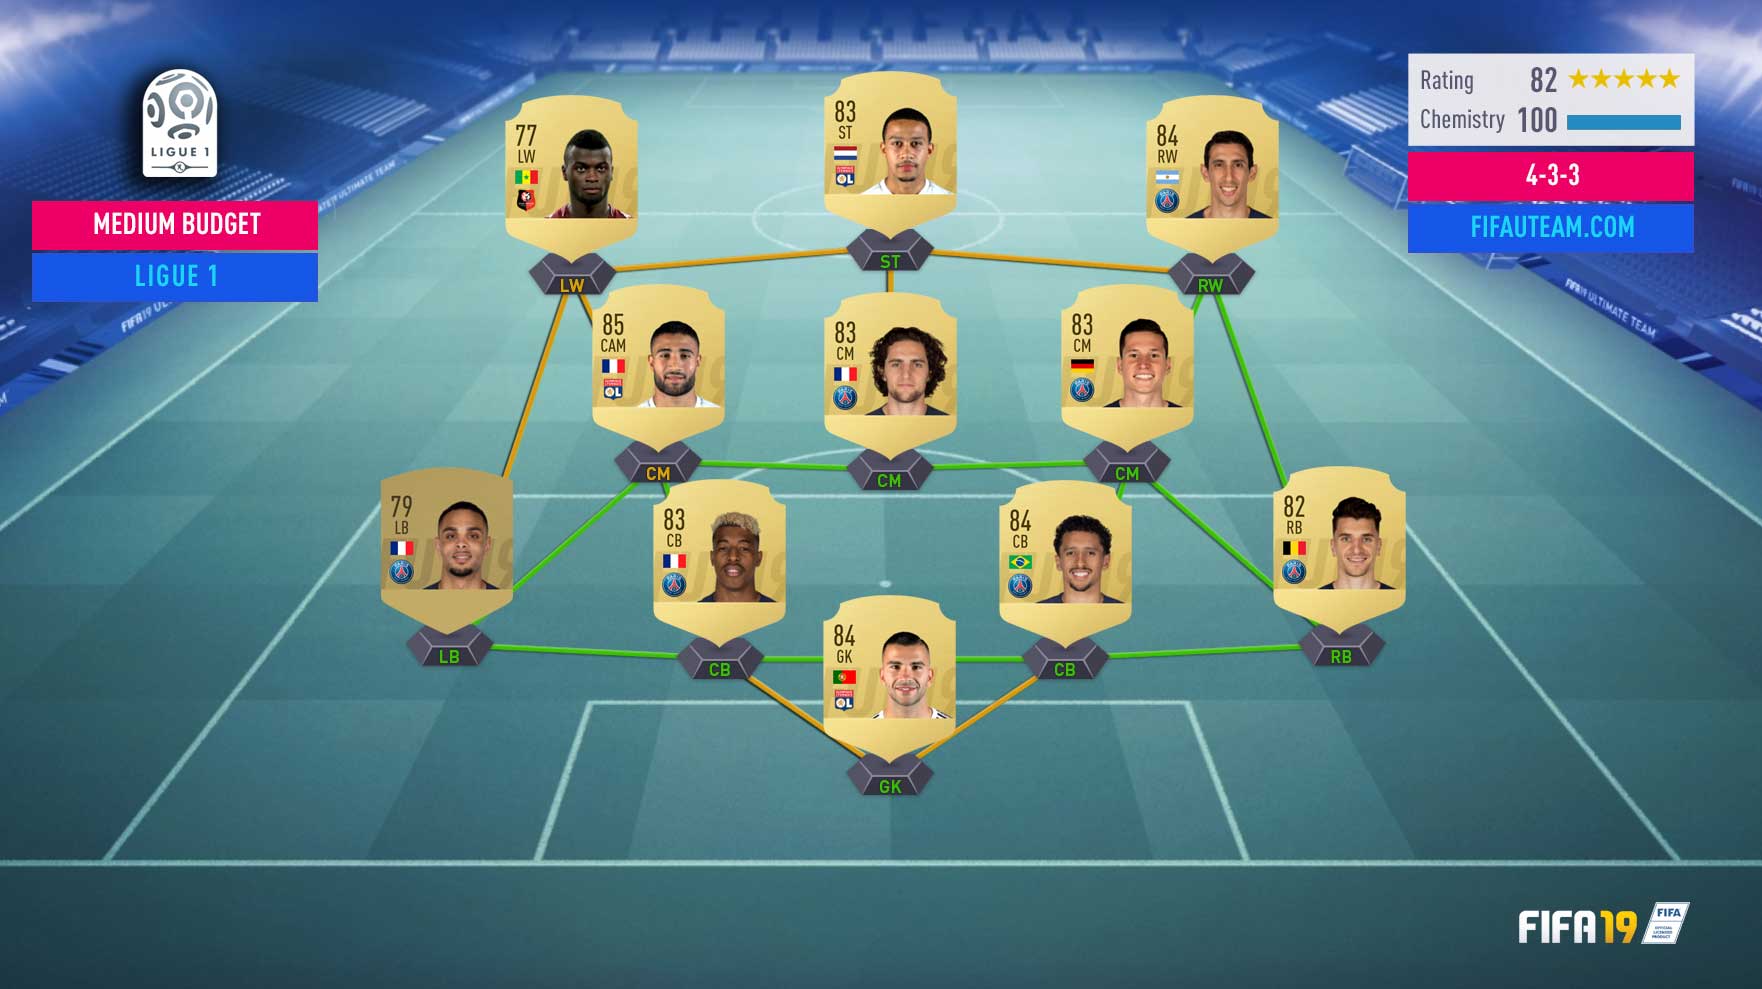 Guia da Ligue 1 para FIFA 19 Ultimate Team